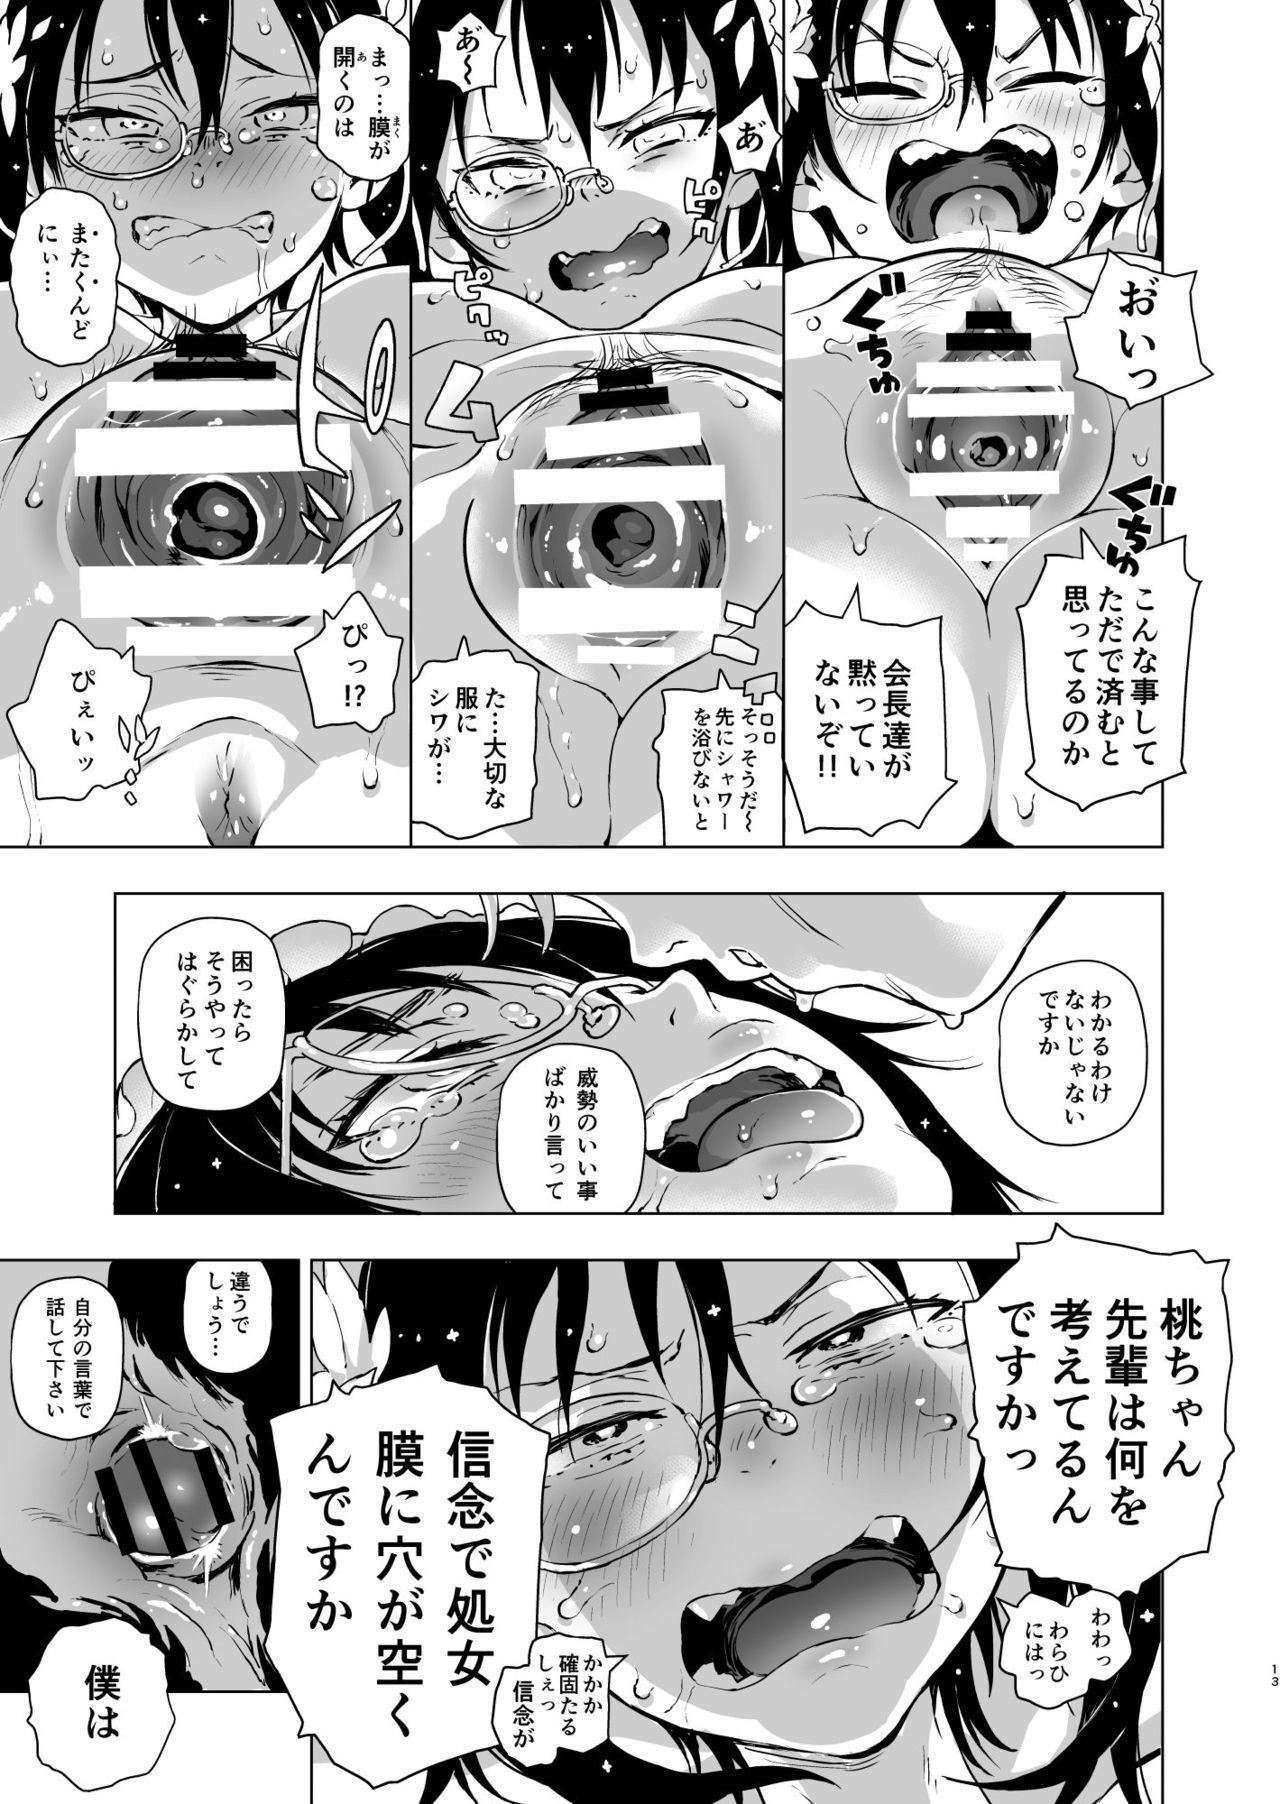 Doctor Nakanaide! Momo-chan!! - Girls und panzer Daring - Page 12